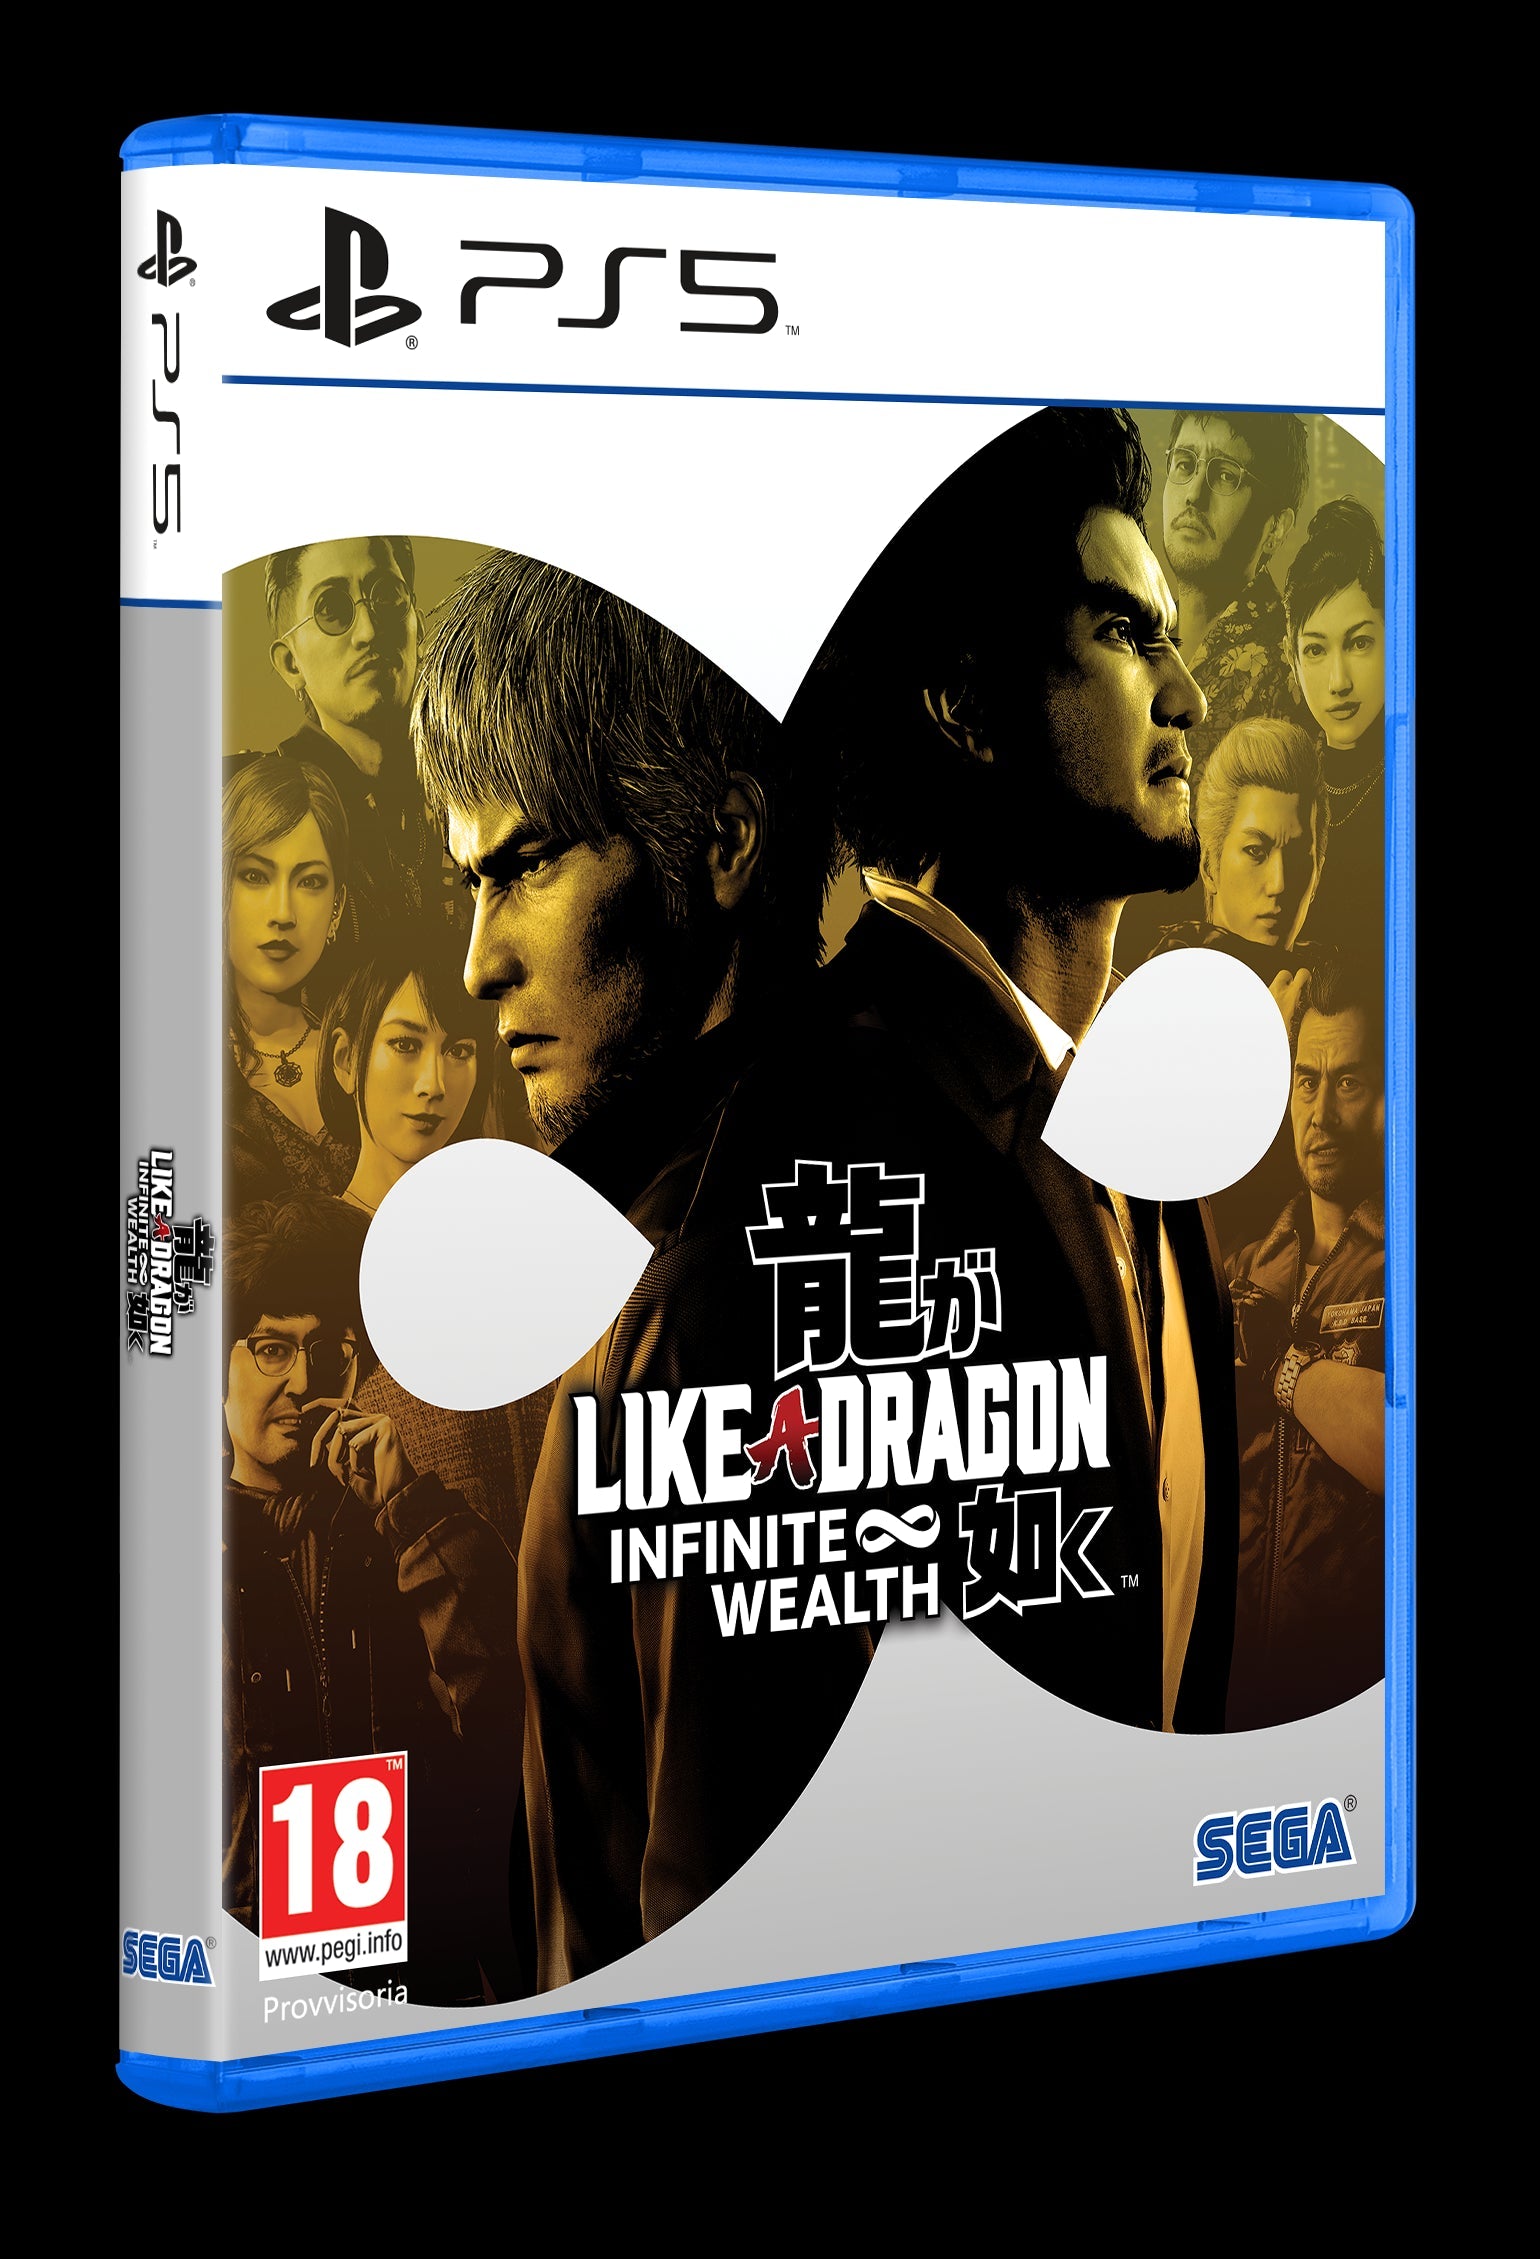 PS5 Like a Dragon: Infinite Wealth - Disponibilità immediata Plaion